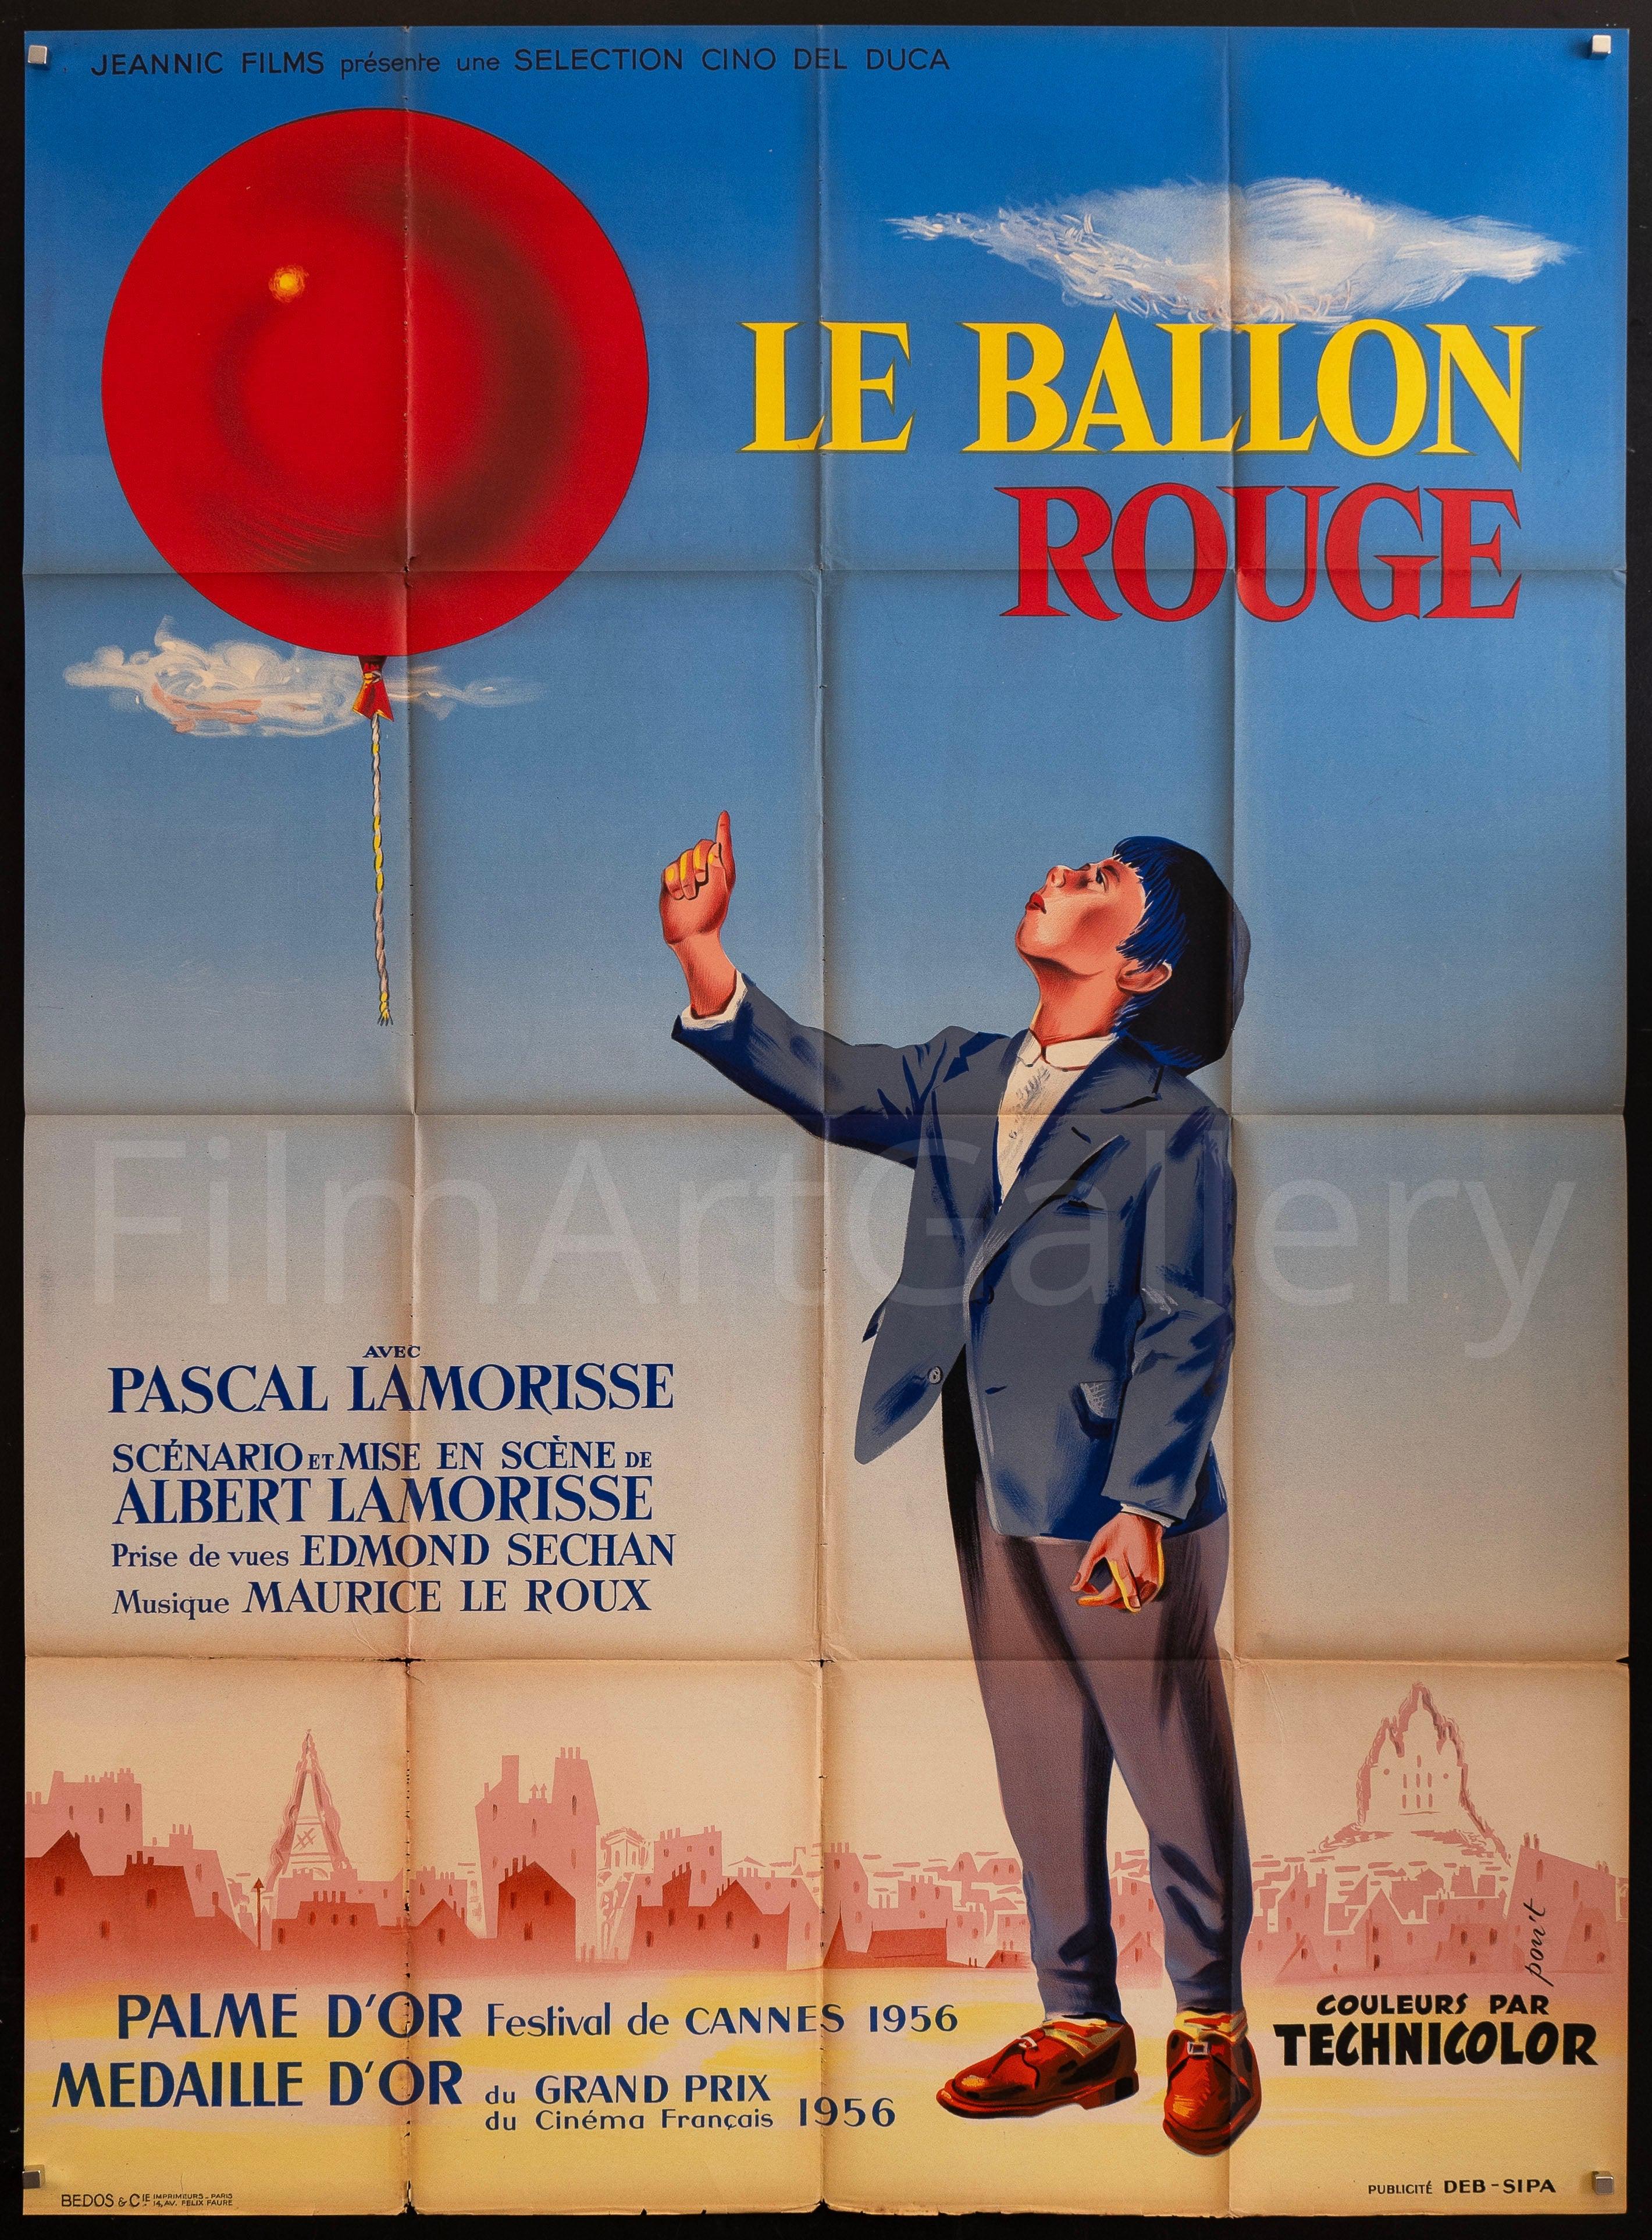 Le Ballon Rouge (The Red Balloon)